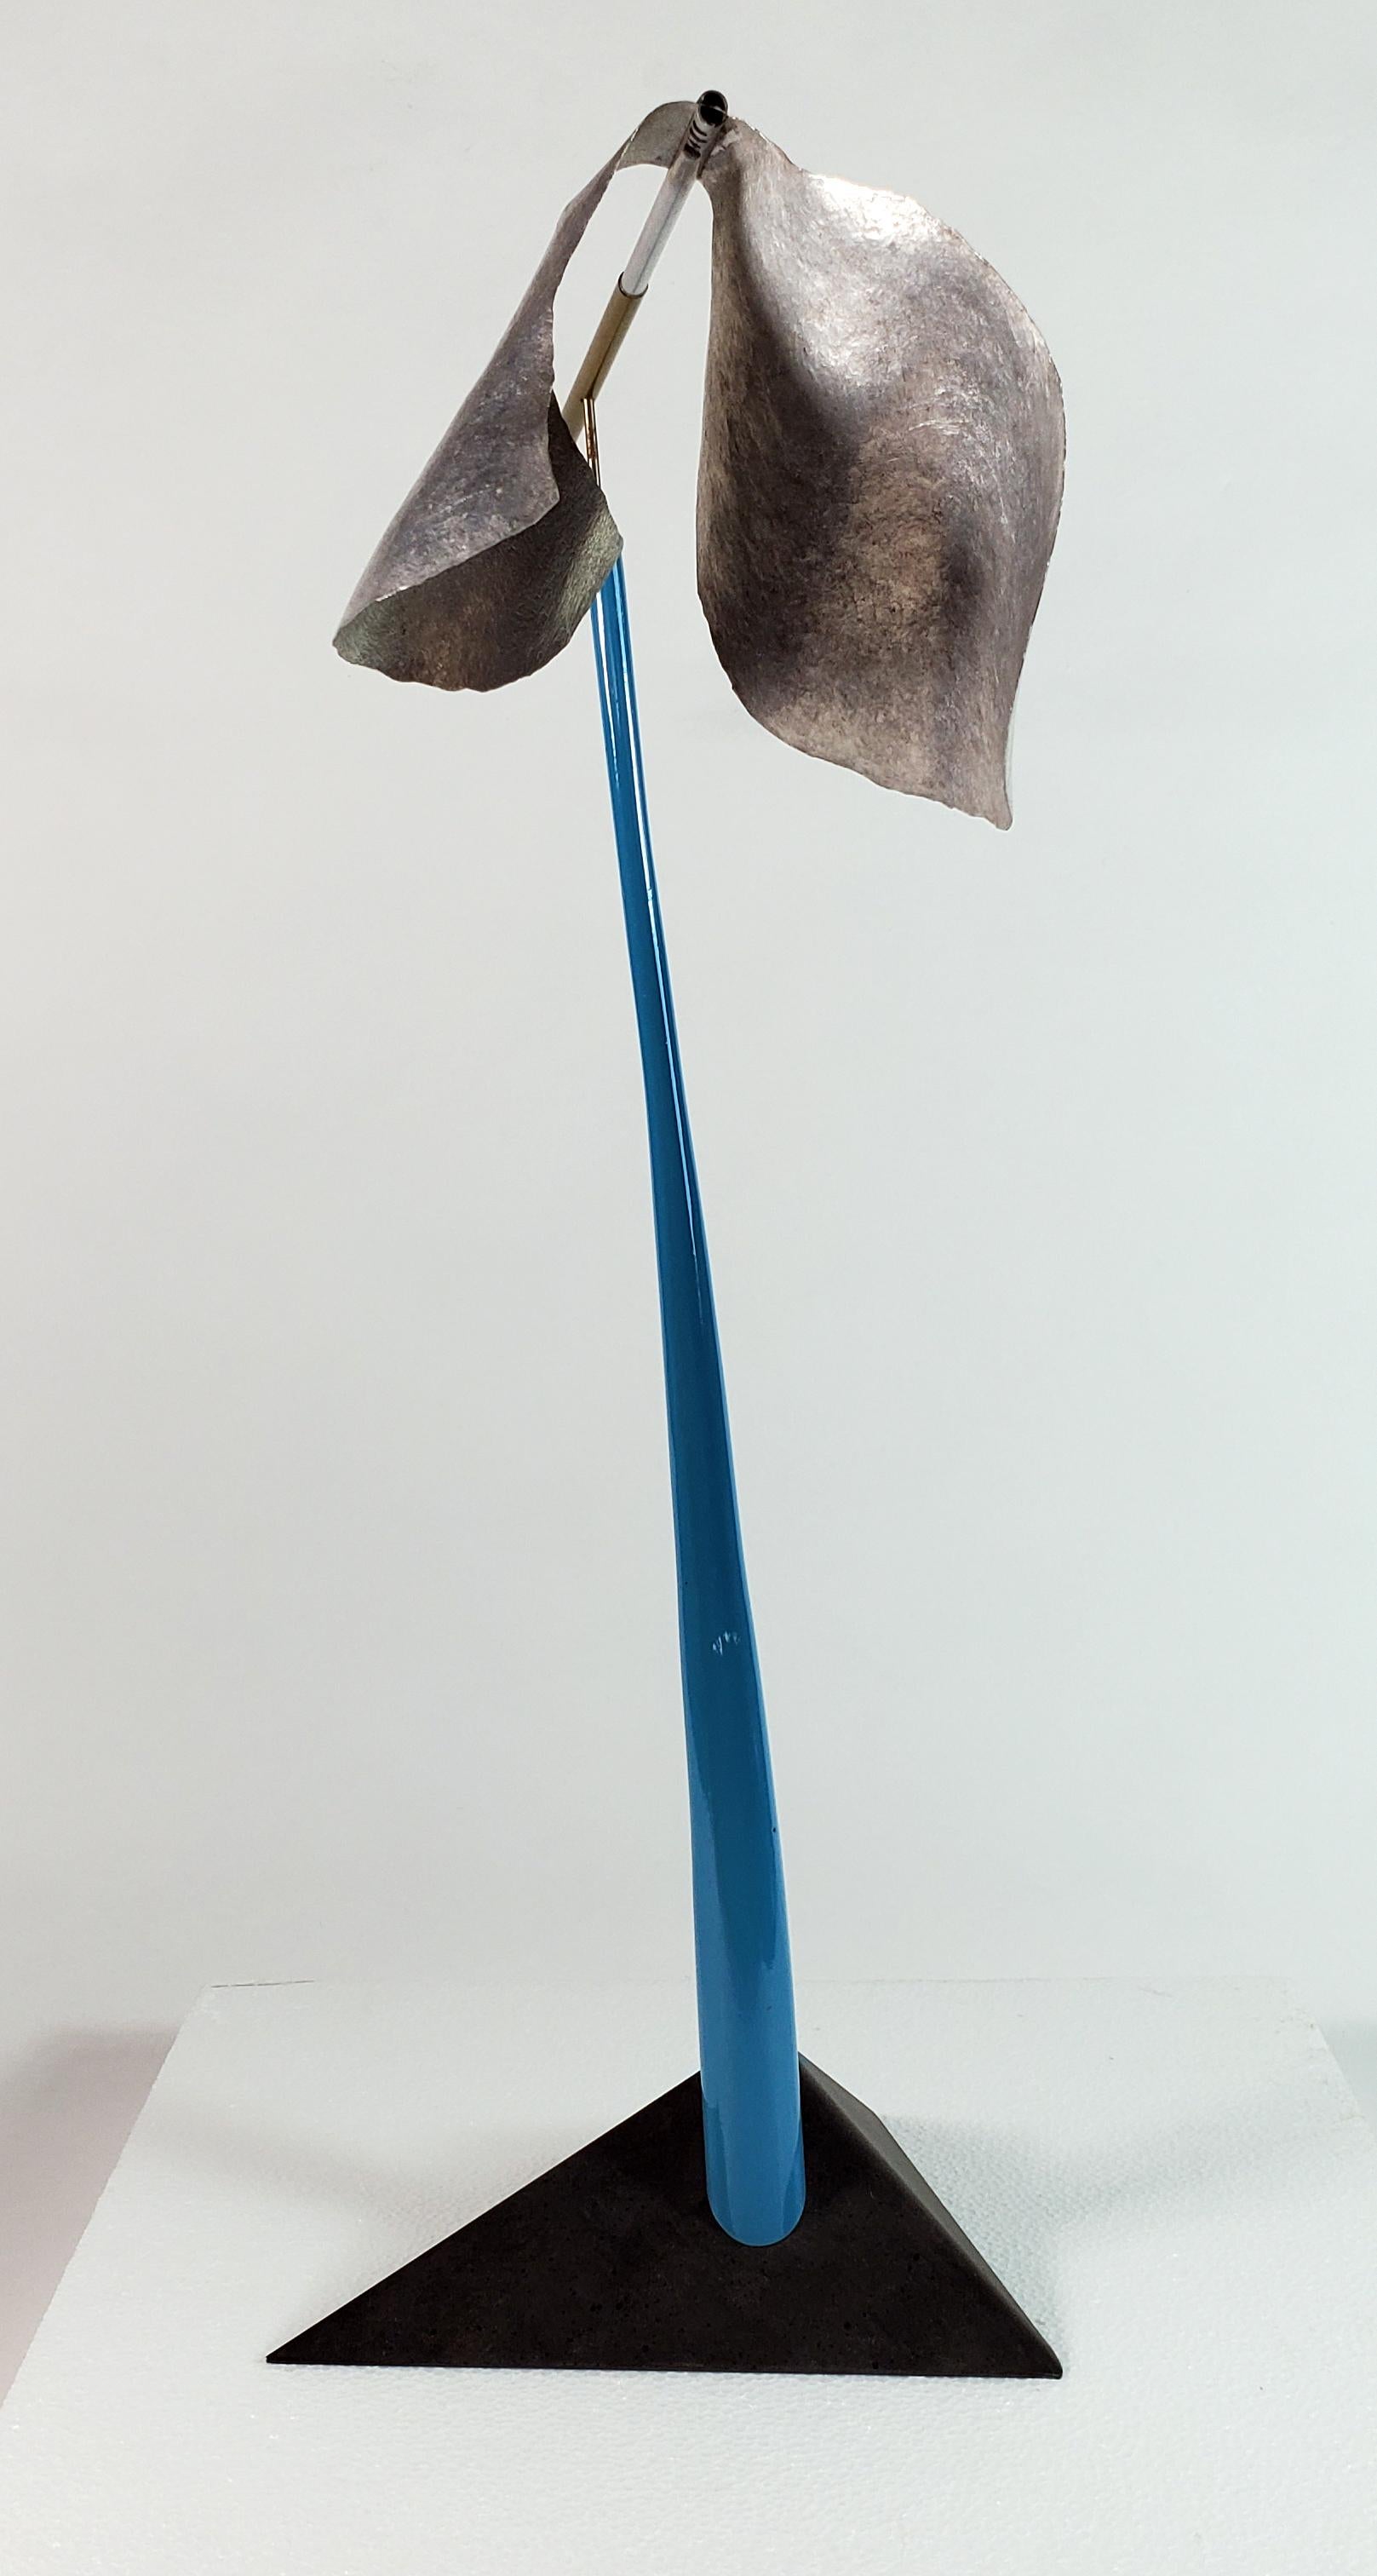 Wolken Konstruktion #3 (Grau), Abstract Sculpture, von Mark Beltchenko Studio